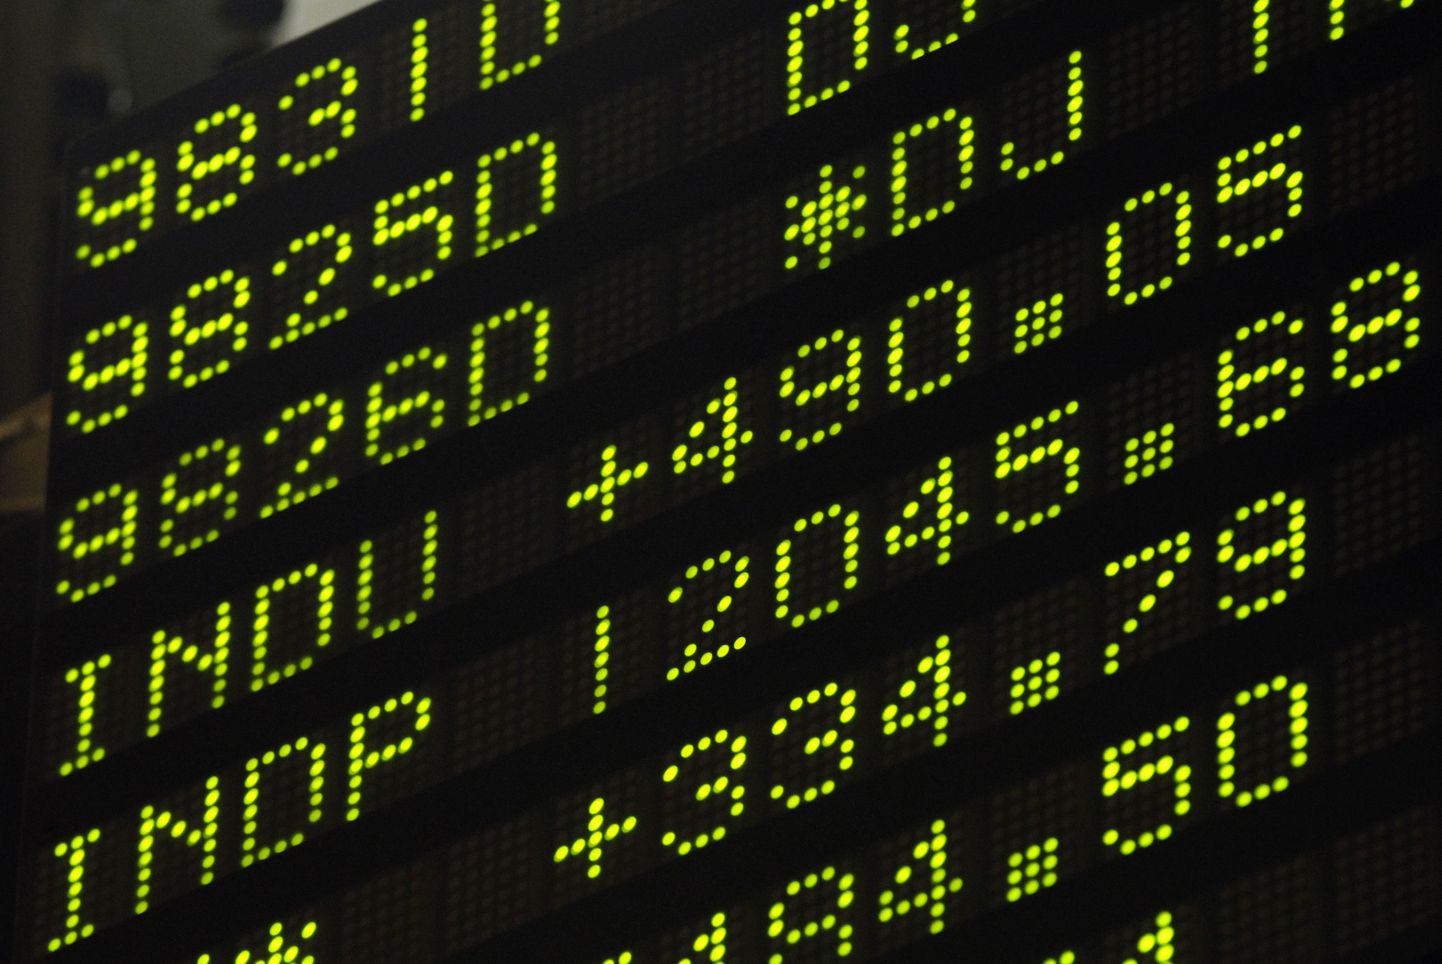 Tabloo New Yorgi börsil 30. novembril 2011. aastal, kui aktsiaindeksid kerkisid üle nelja protsendi.